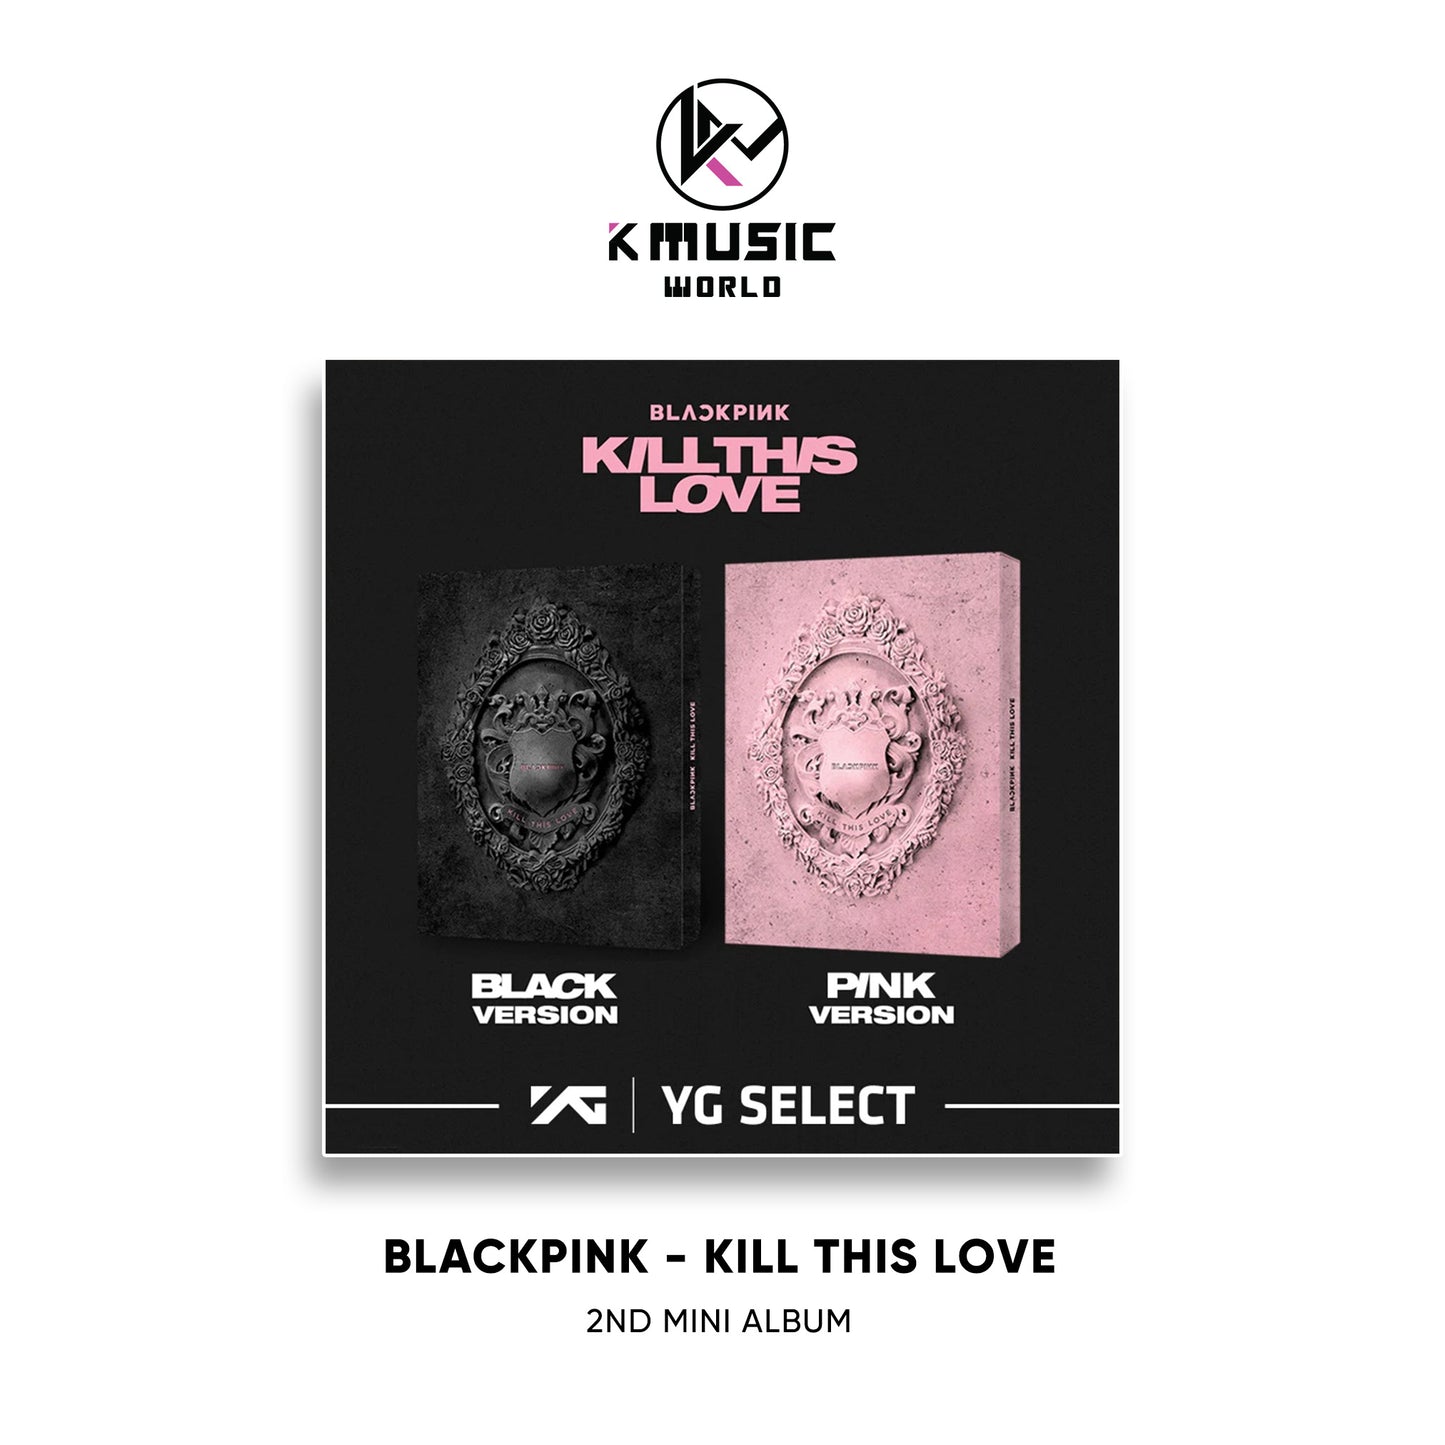 BLACKPINK - KILL THIS LOVE [2nd Mini Album]